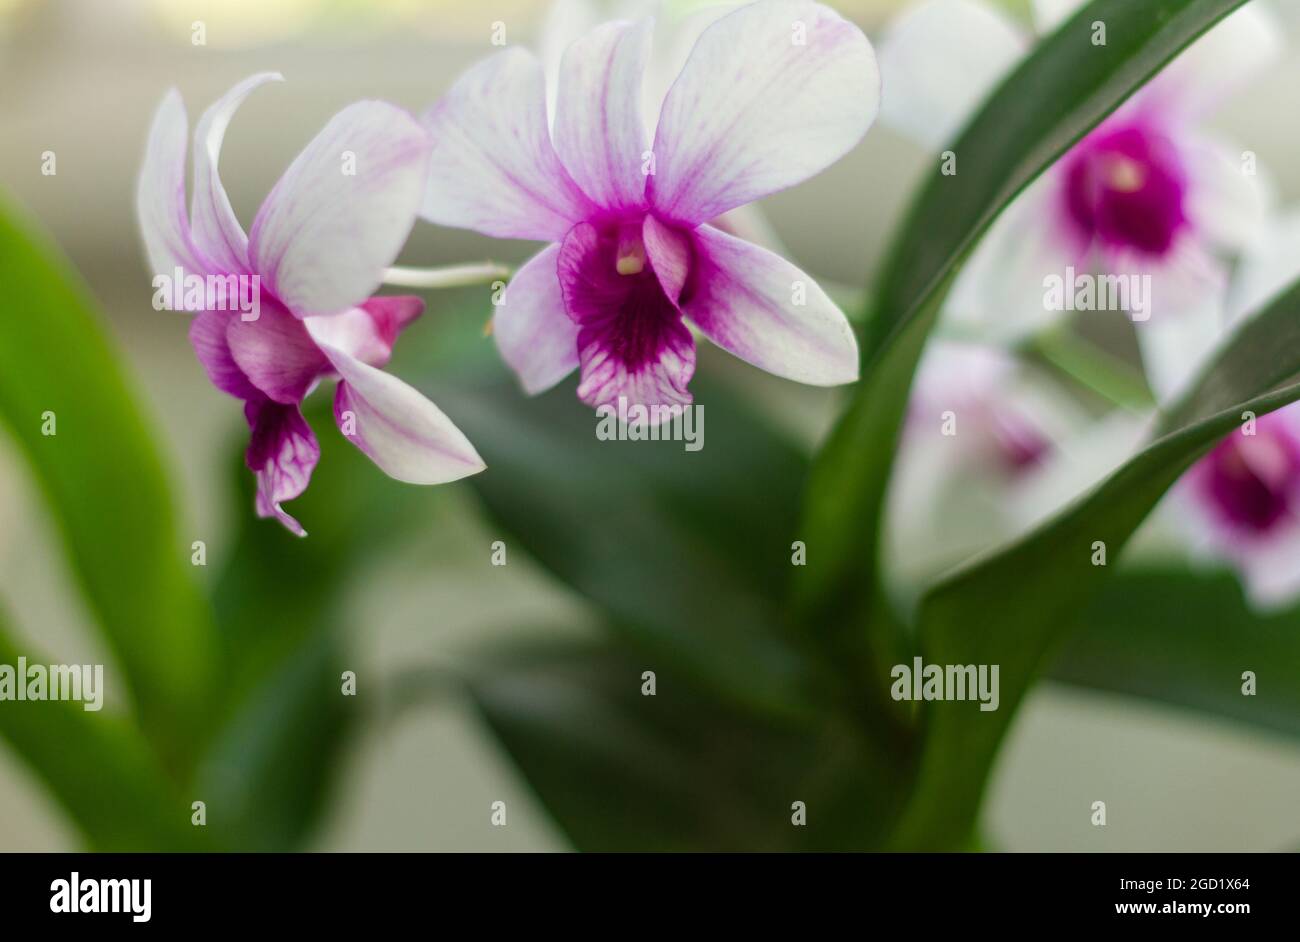 Las plantas de orquídeas florecen en blanco y púrpura Foto de stock